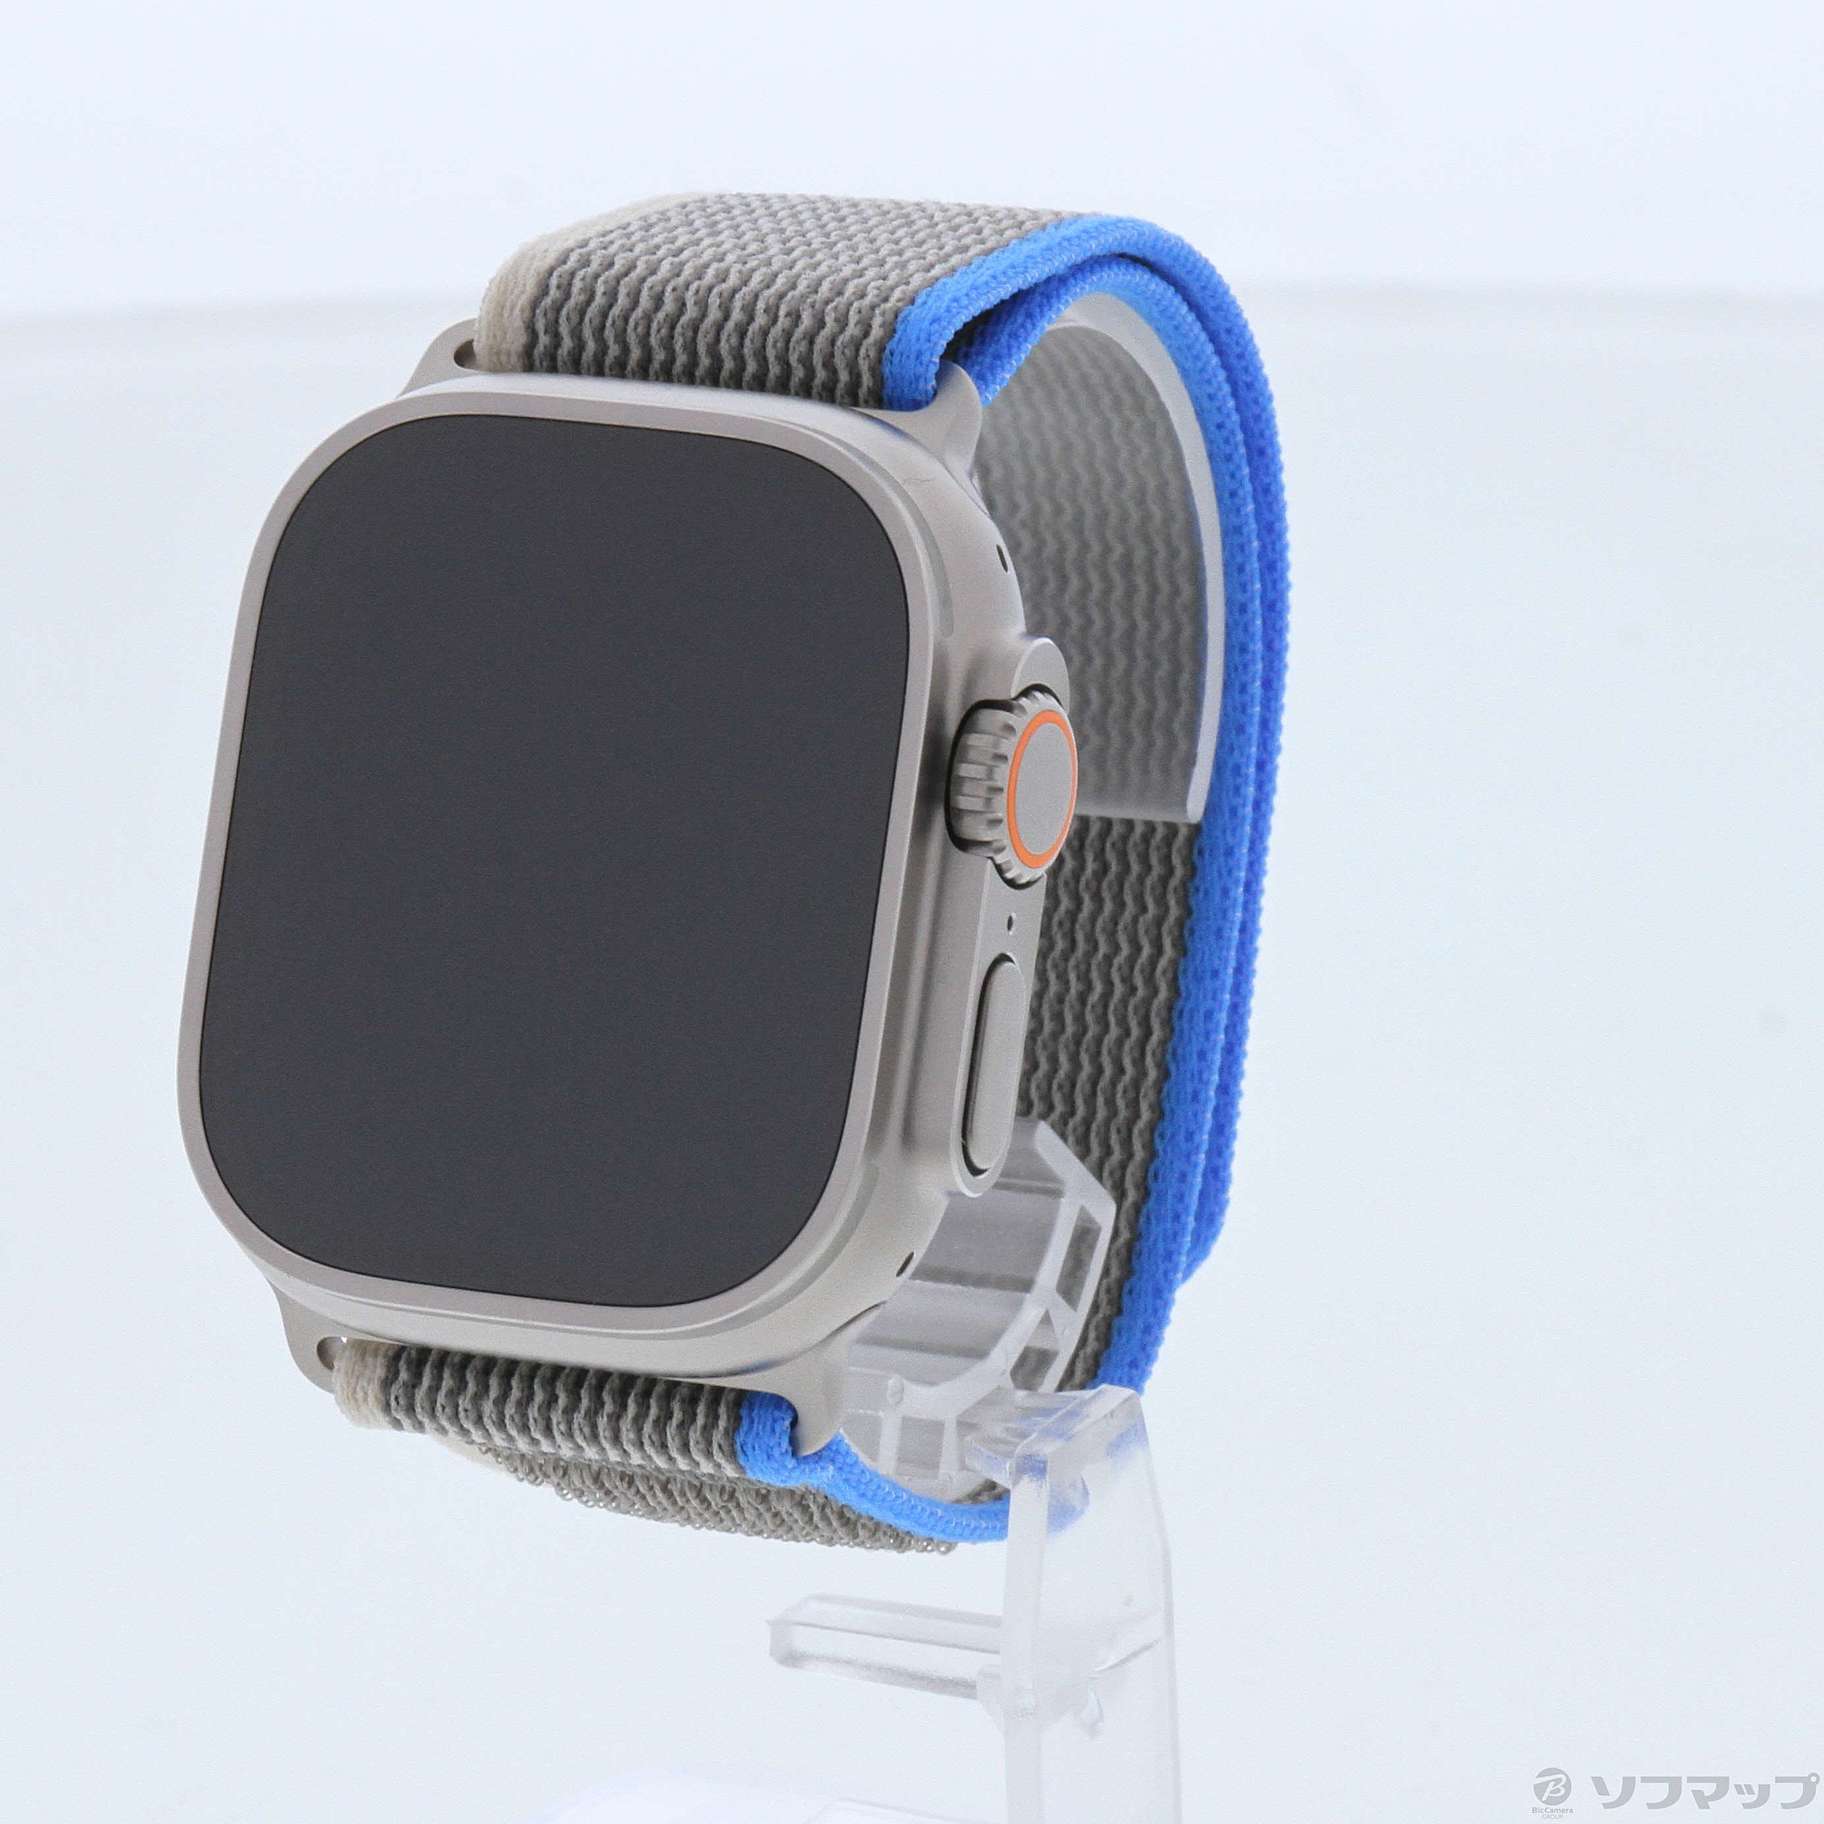 大流行中 純正 ブルー/グレイトレイルループ Apple 箱有り Apple Watch